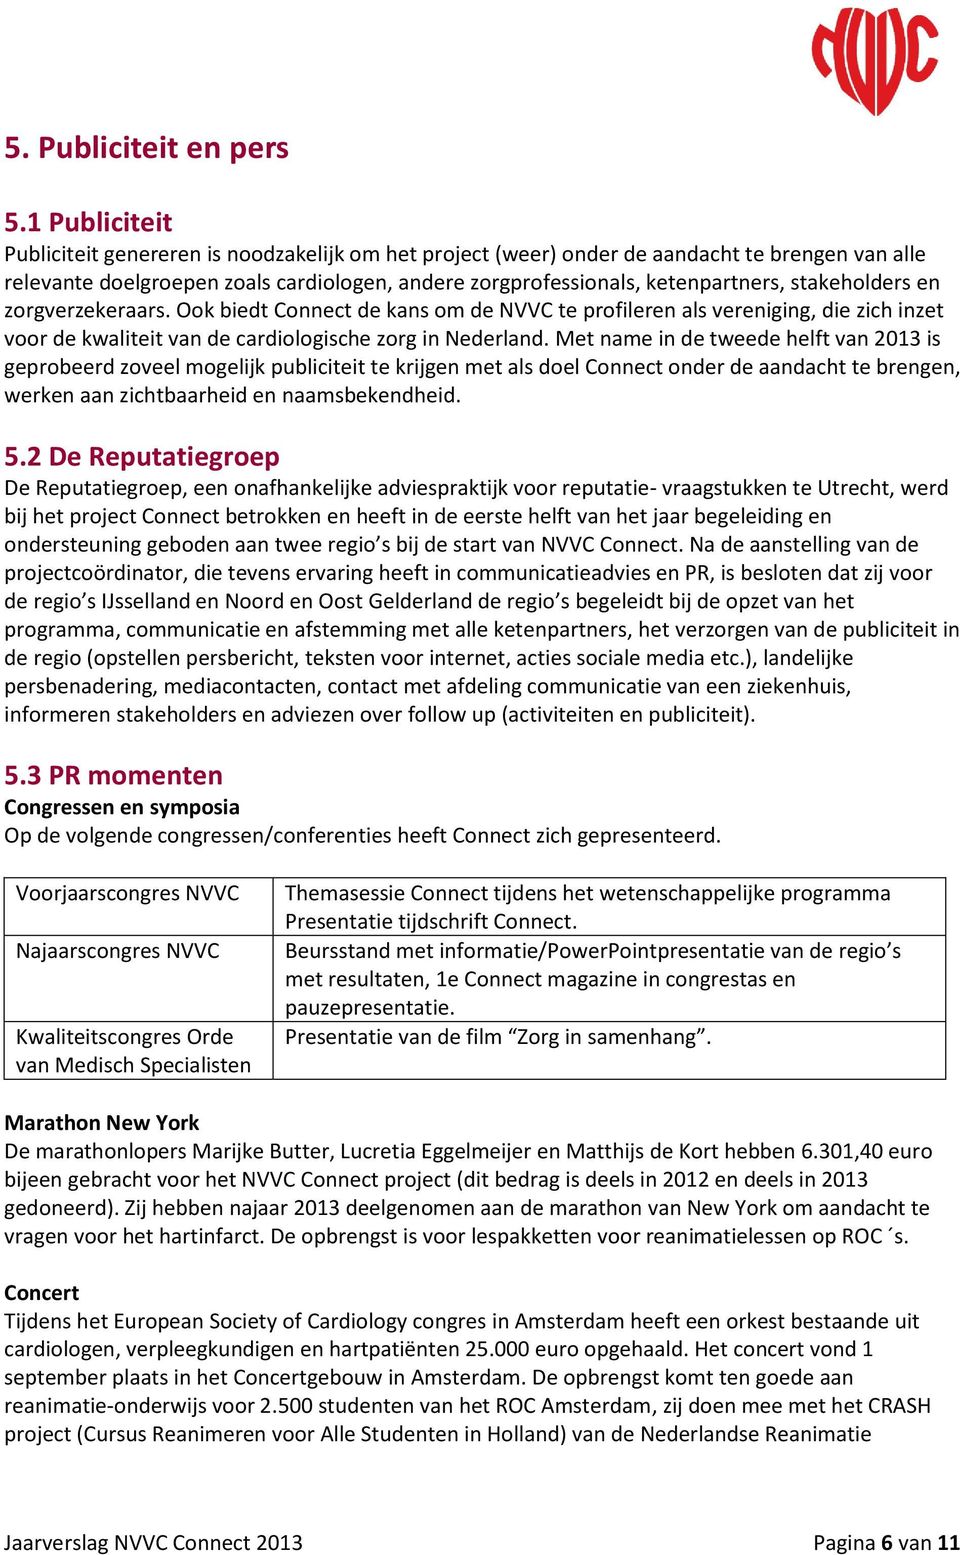 stakeholders en zorgverzekeraars. Ook biedt Connect de kans om de NVVC te profileren als vereniging, die zich inzet voor de kwaliteit van de cardiologische zorg in Nederland.